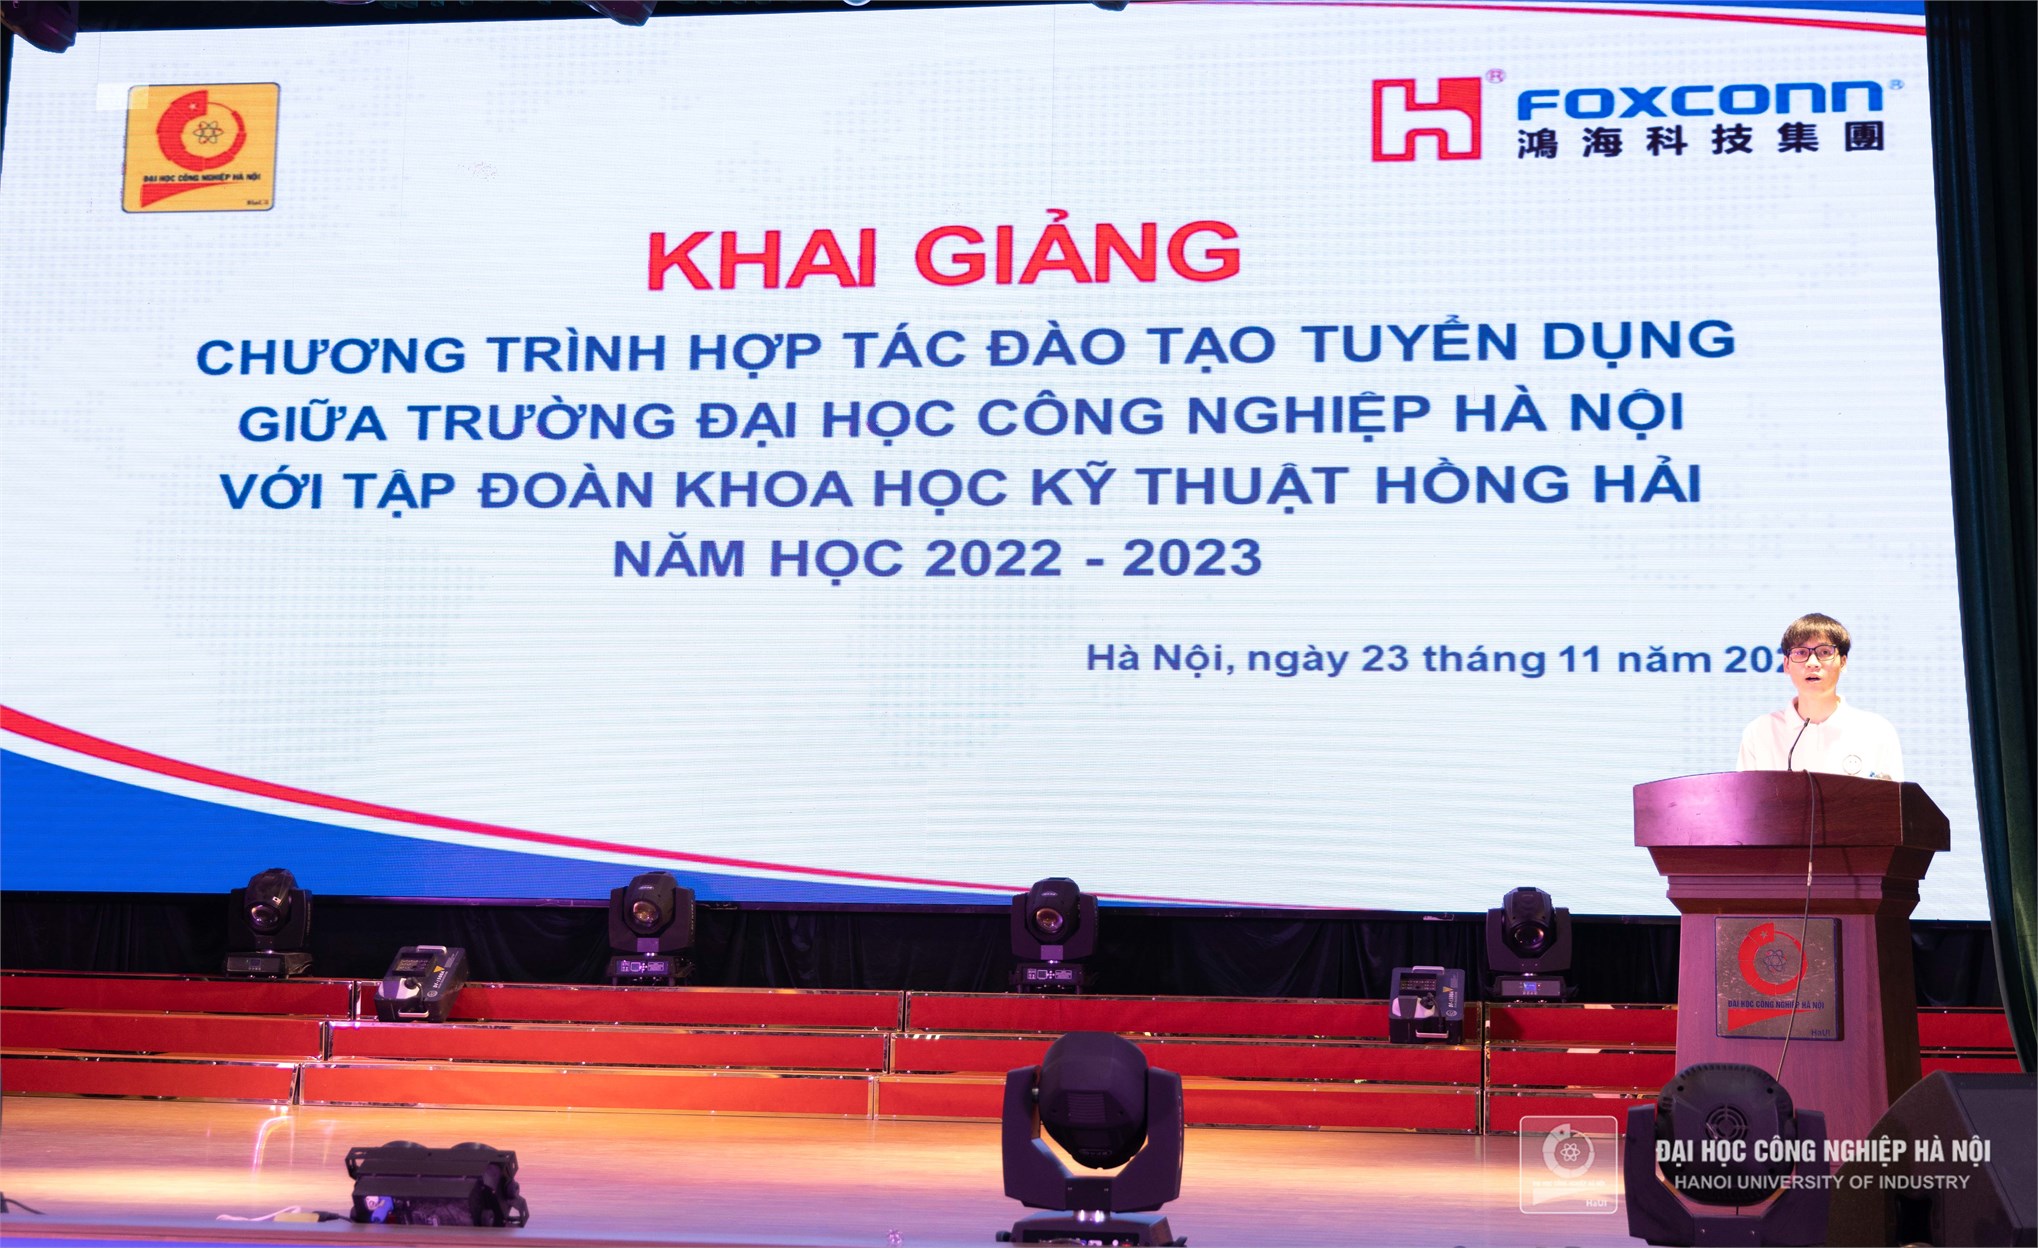 Khai giảng Chương trình hợp tác đào tạo tuyển dụng với Tập đoàn KHKT Hồng Hải năm học 2022 - 2023